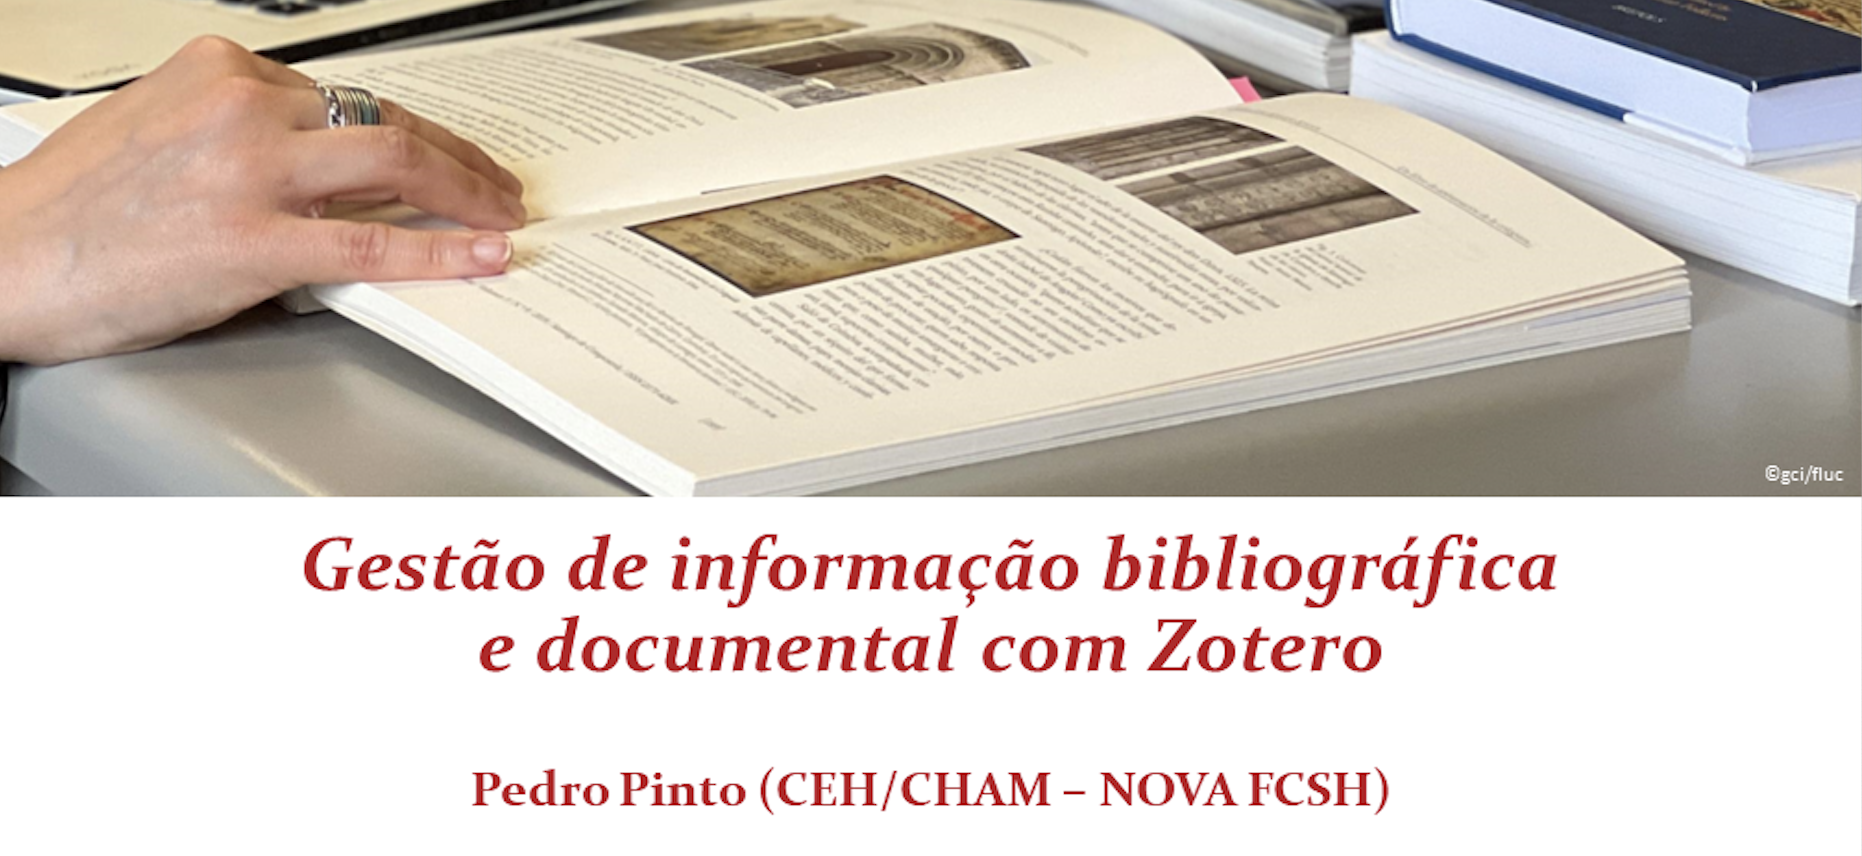 Gestão de informação bibliográfica e documental com Zotero, por Pedro Pinto (CEH/CHAM-NOVA FCSH)